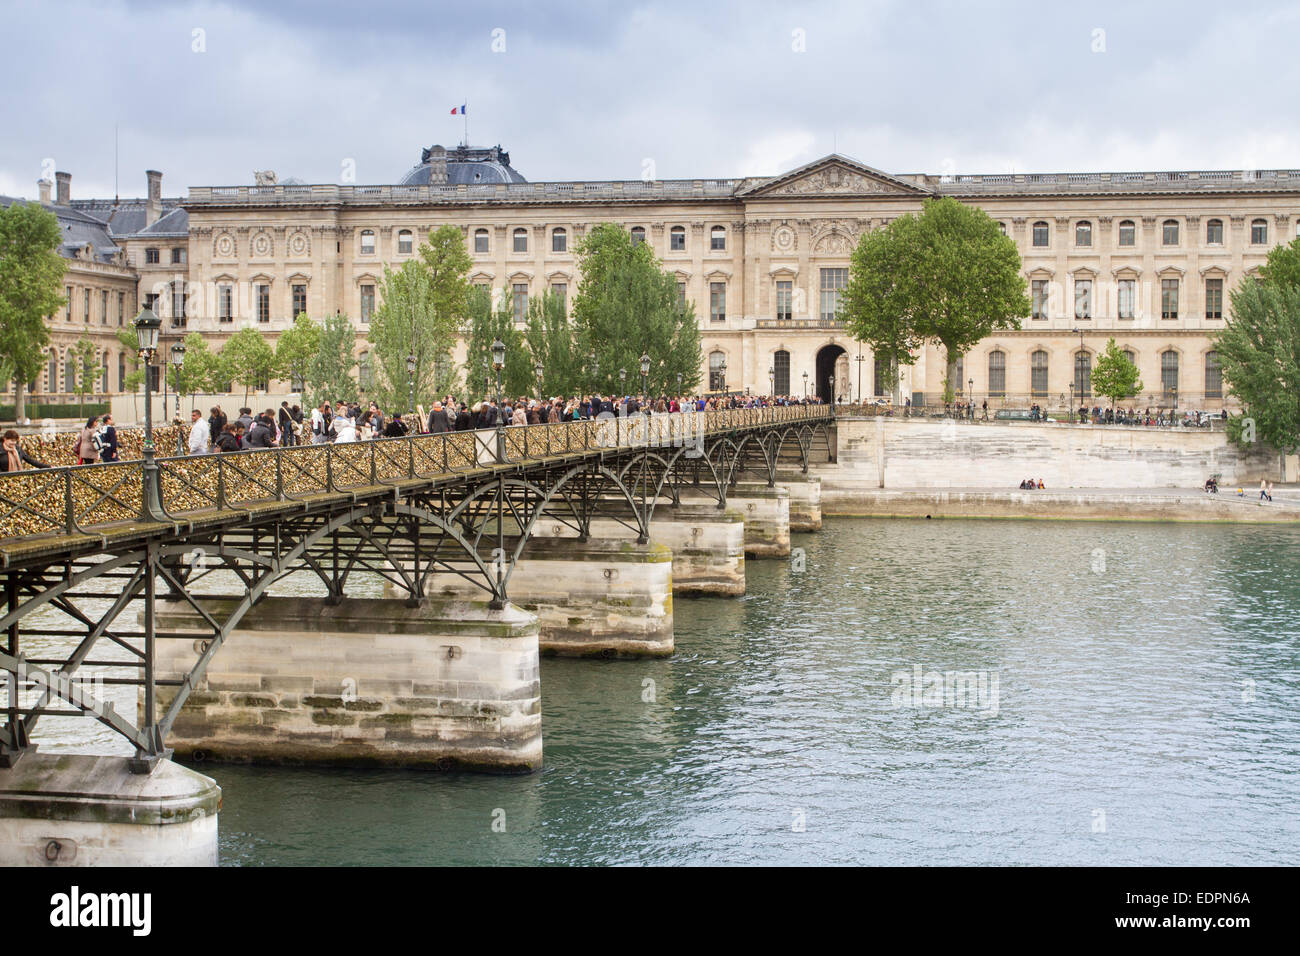 Pont des Arts and the Louvre Museum, Paris, France Stock Photo - Alamy